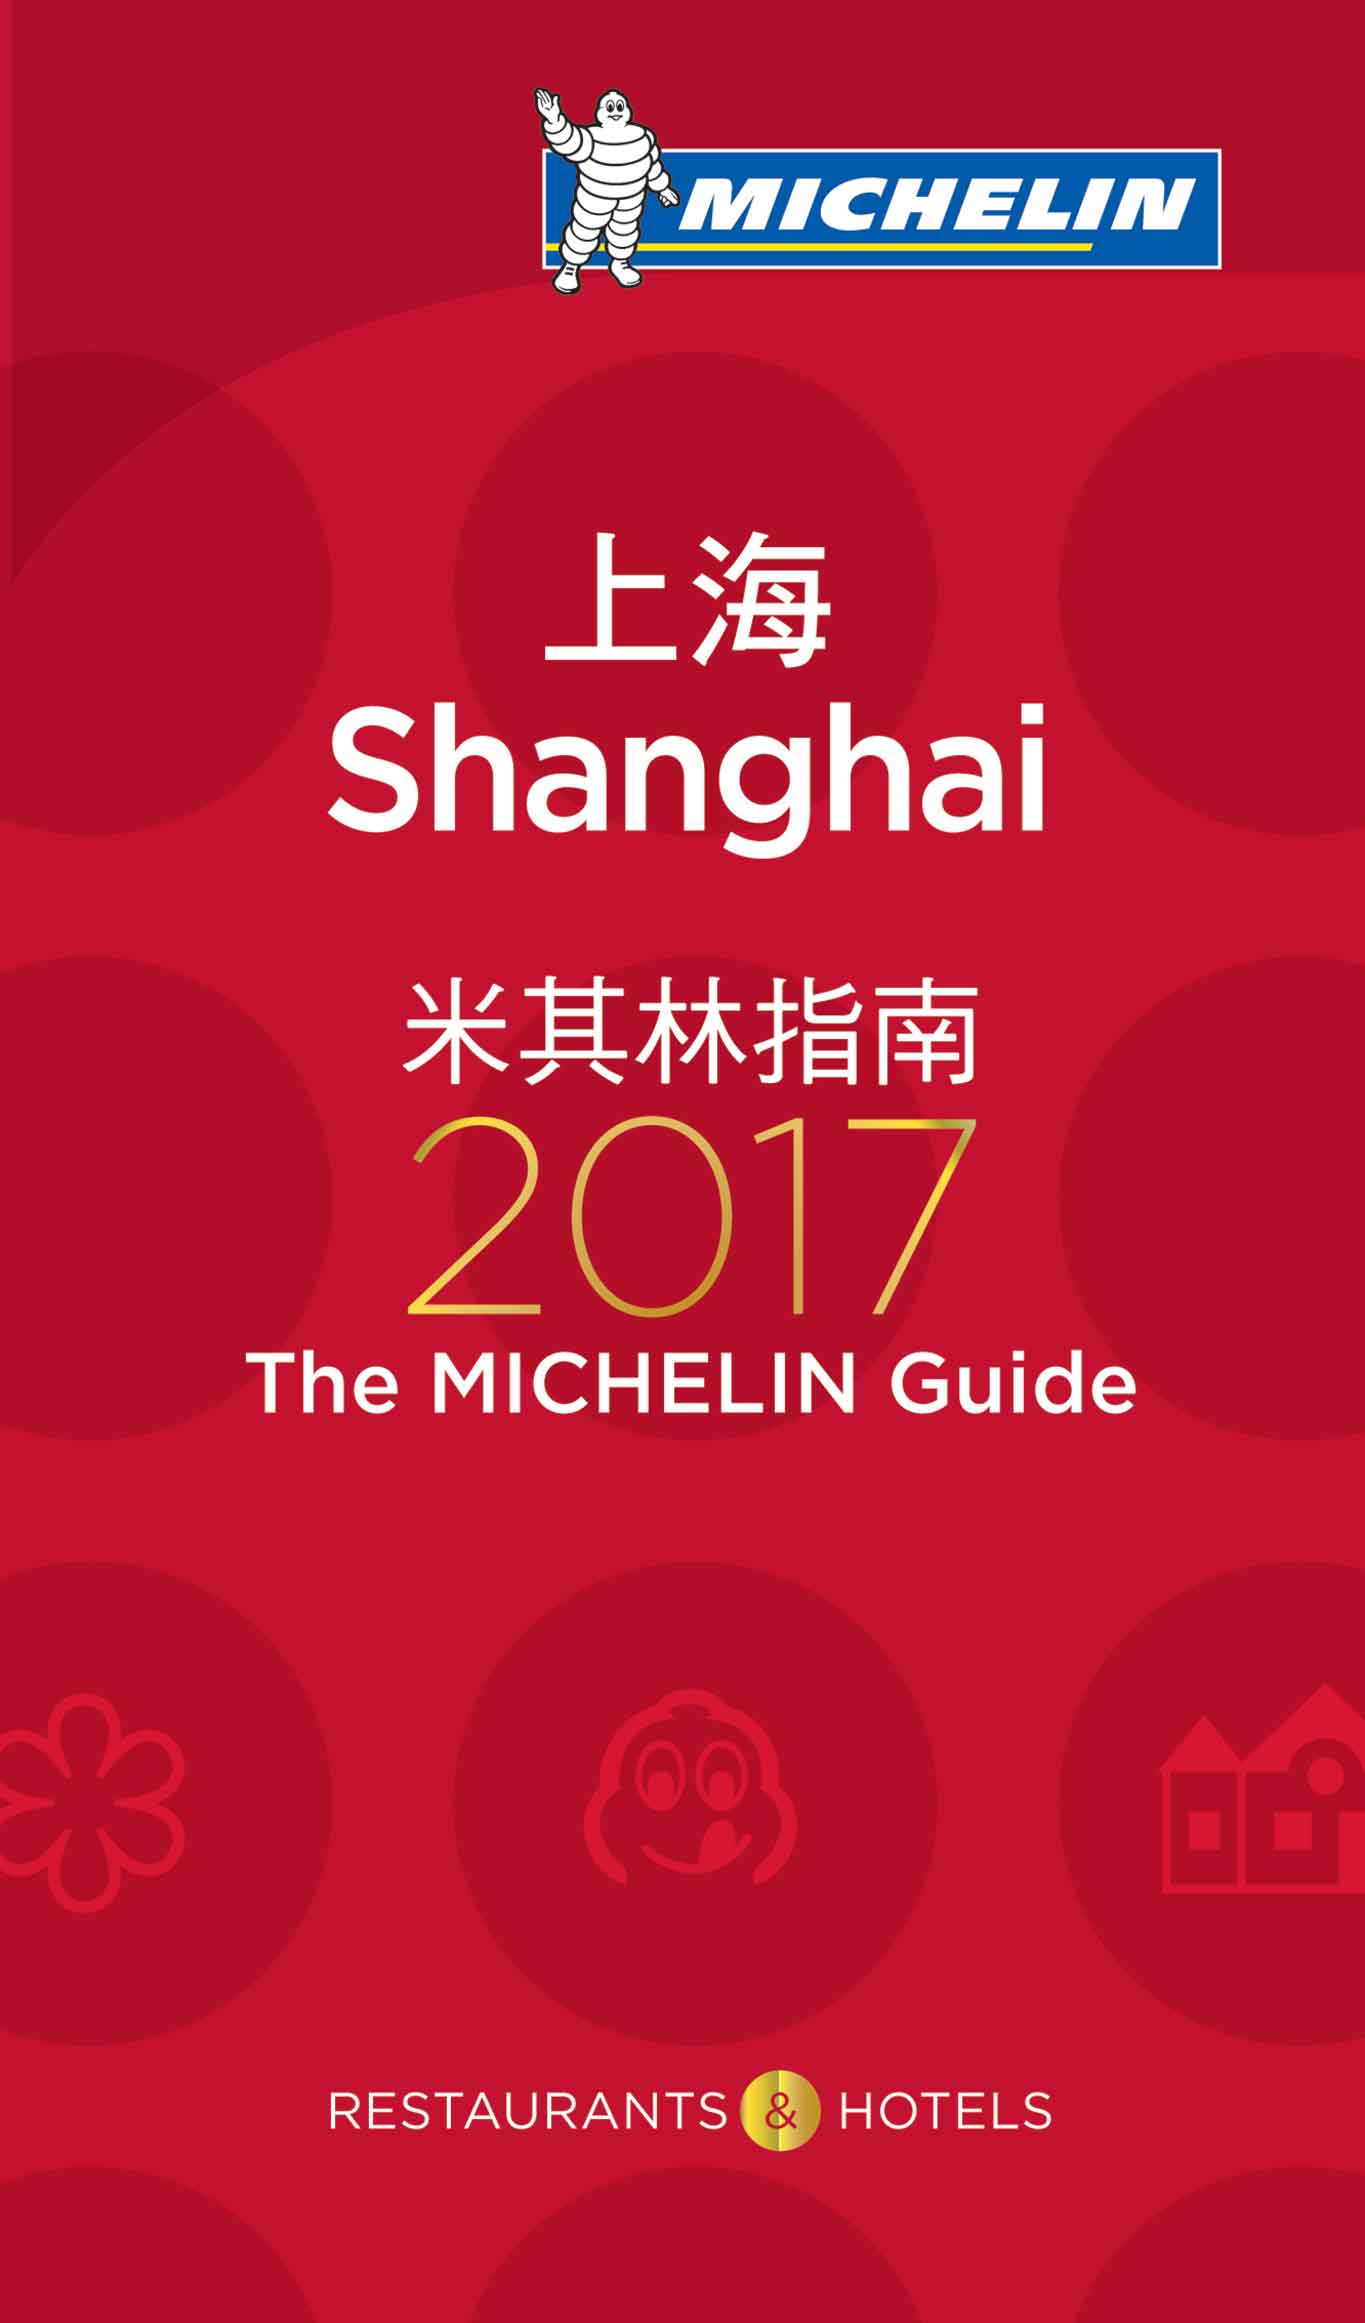 michelin shanghai 2017